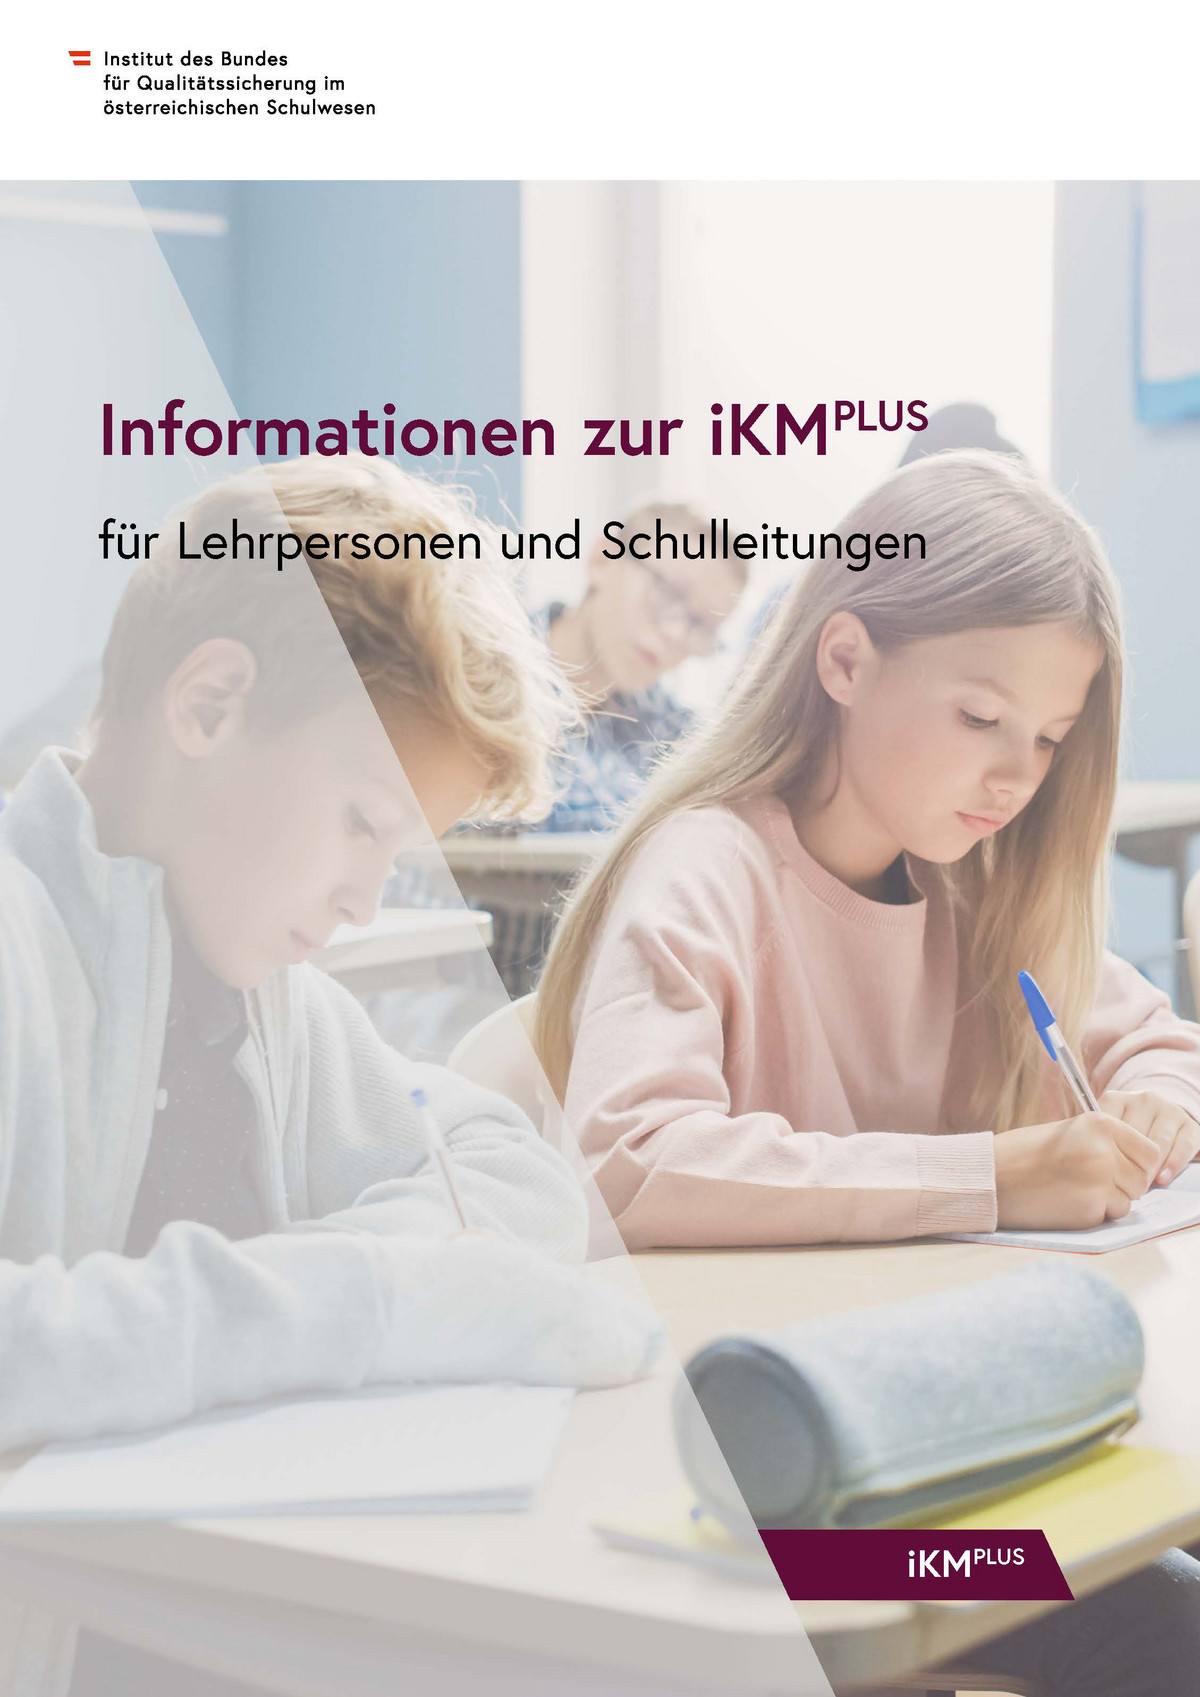 Titelseite der Publikation mit Informationen zur individuellen Kompetenzmessung PLUS für Lehrpersonen und Schulleitungen